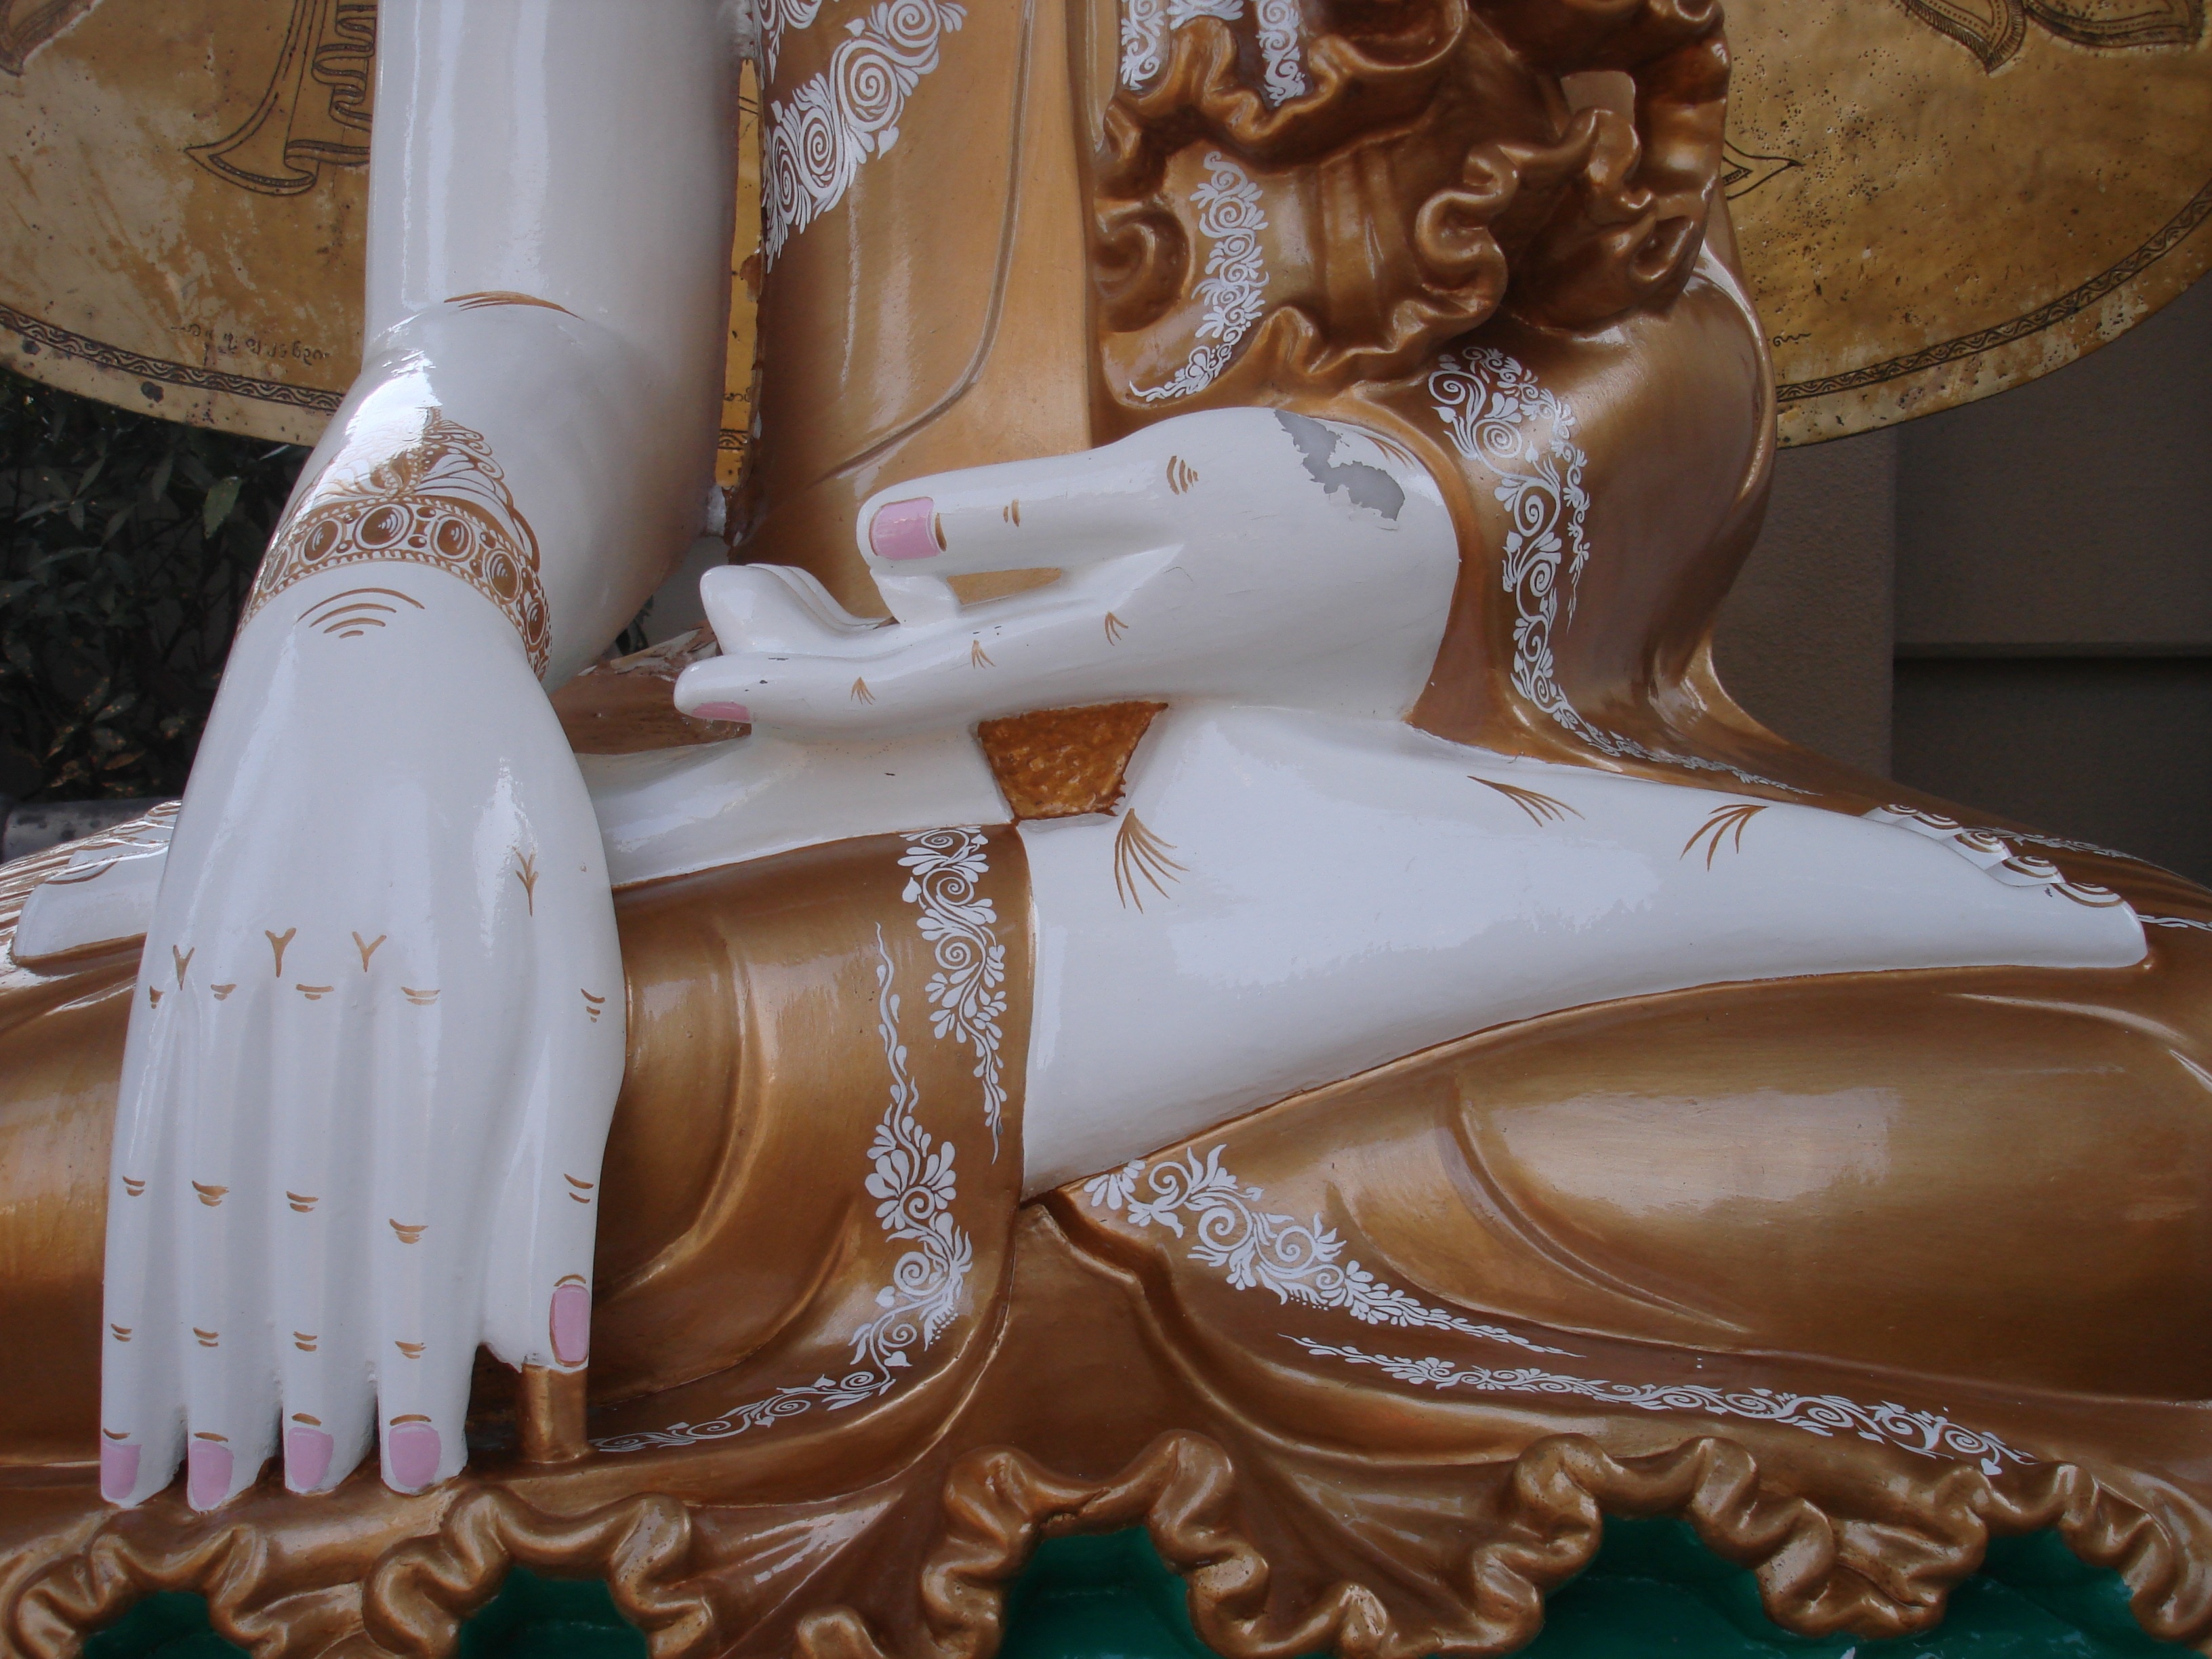 buddga figurine